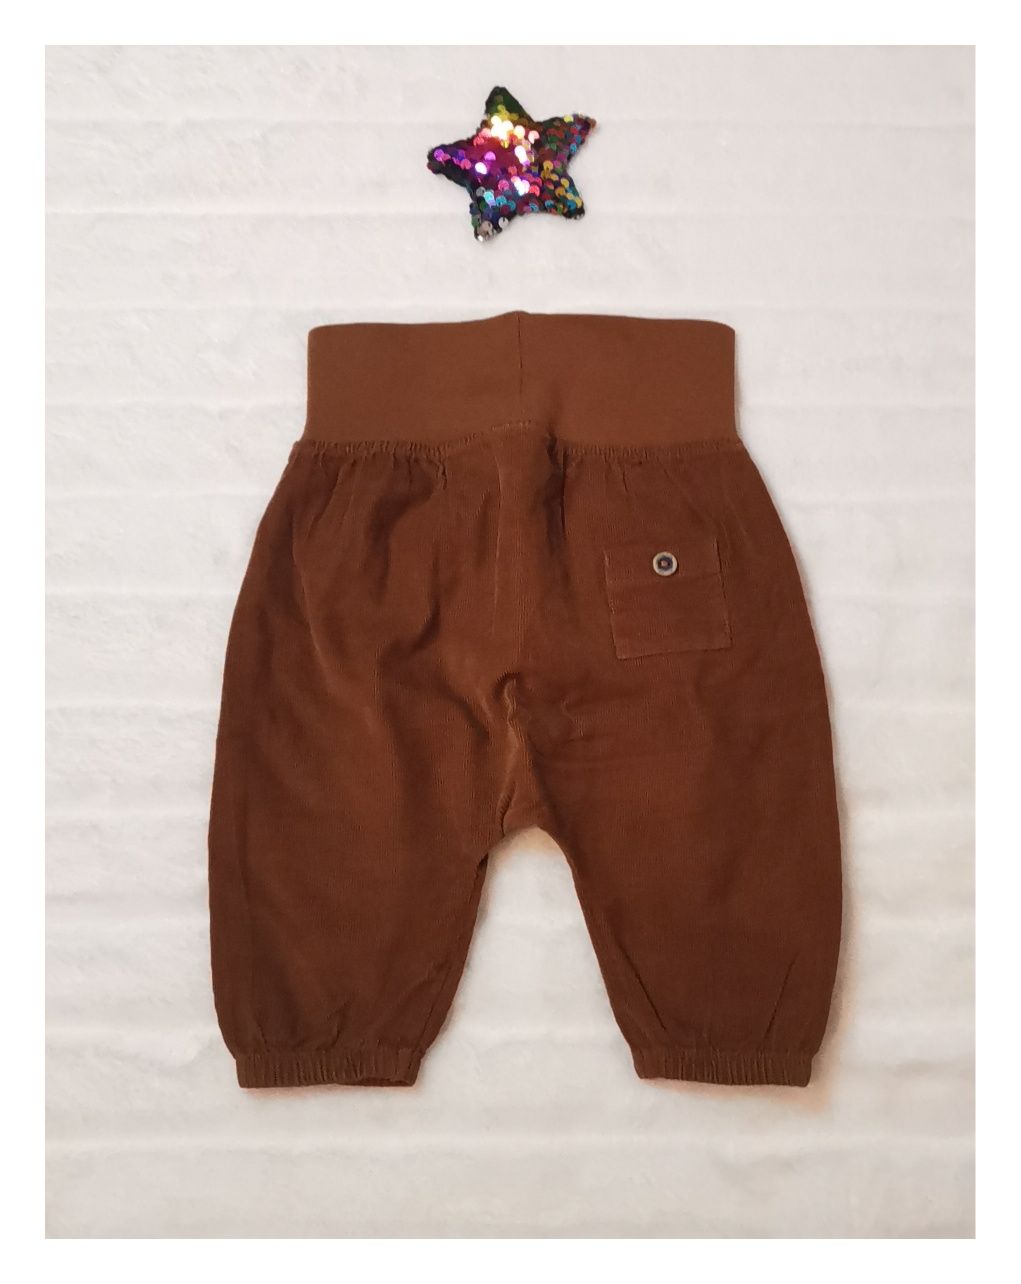 Spodnie H&M dla chłopca rozmiar 62 (2-4mc)